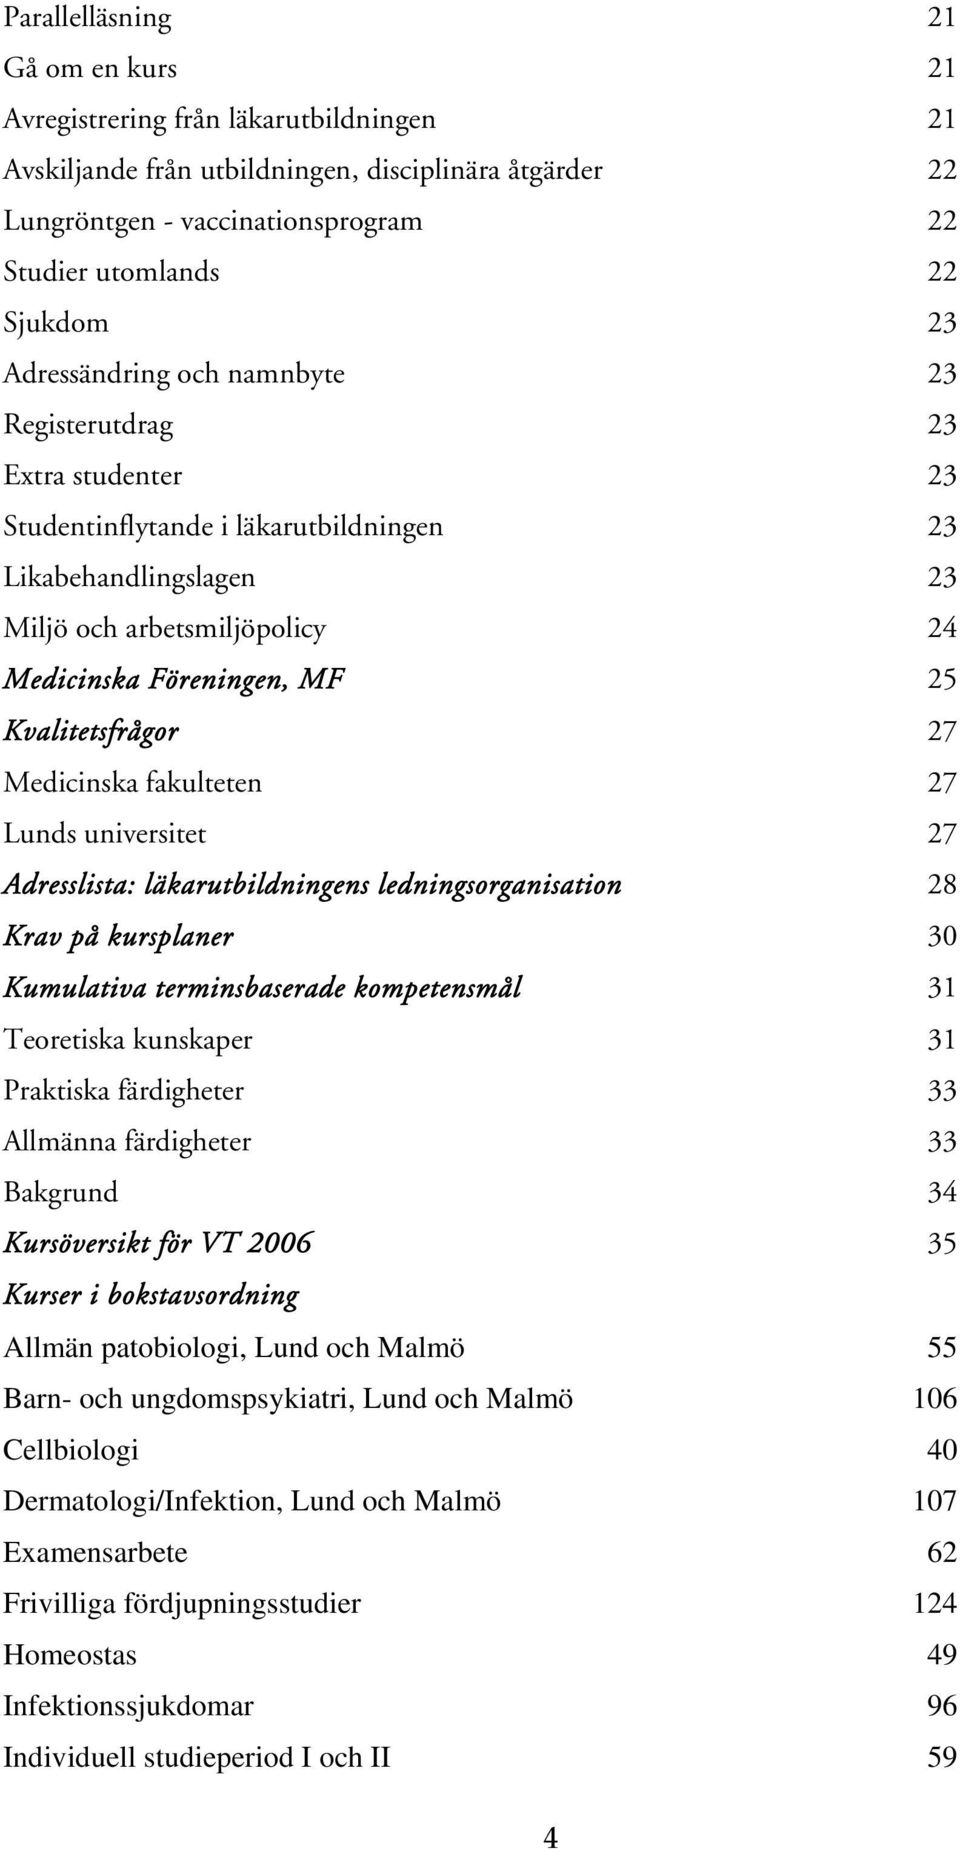 Kvalitetsfrågor 27 Medicinska fakulteten 27 Lunds universitet 27 Adresslista: läkarutbildningens ledningsorganisation 28 Krav på kursplaner 30 Kumulativa terminsbaserade kompetensmål 31 Teoretiska